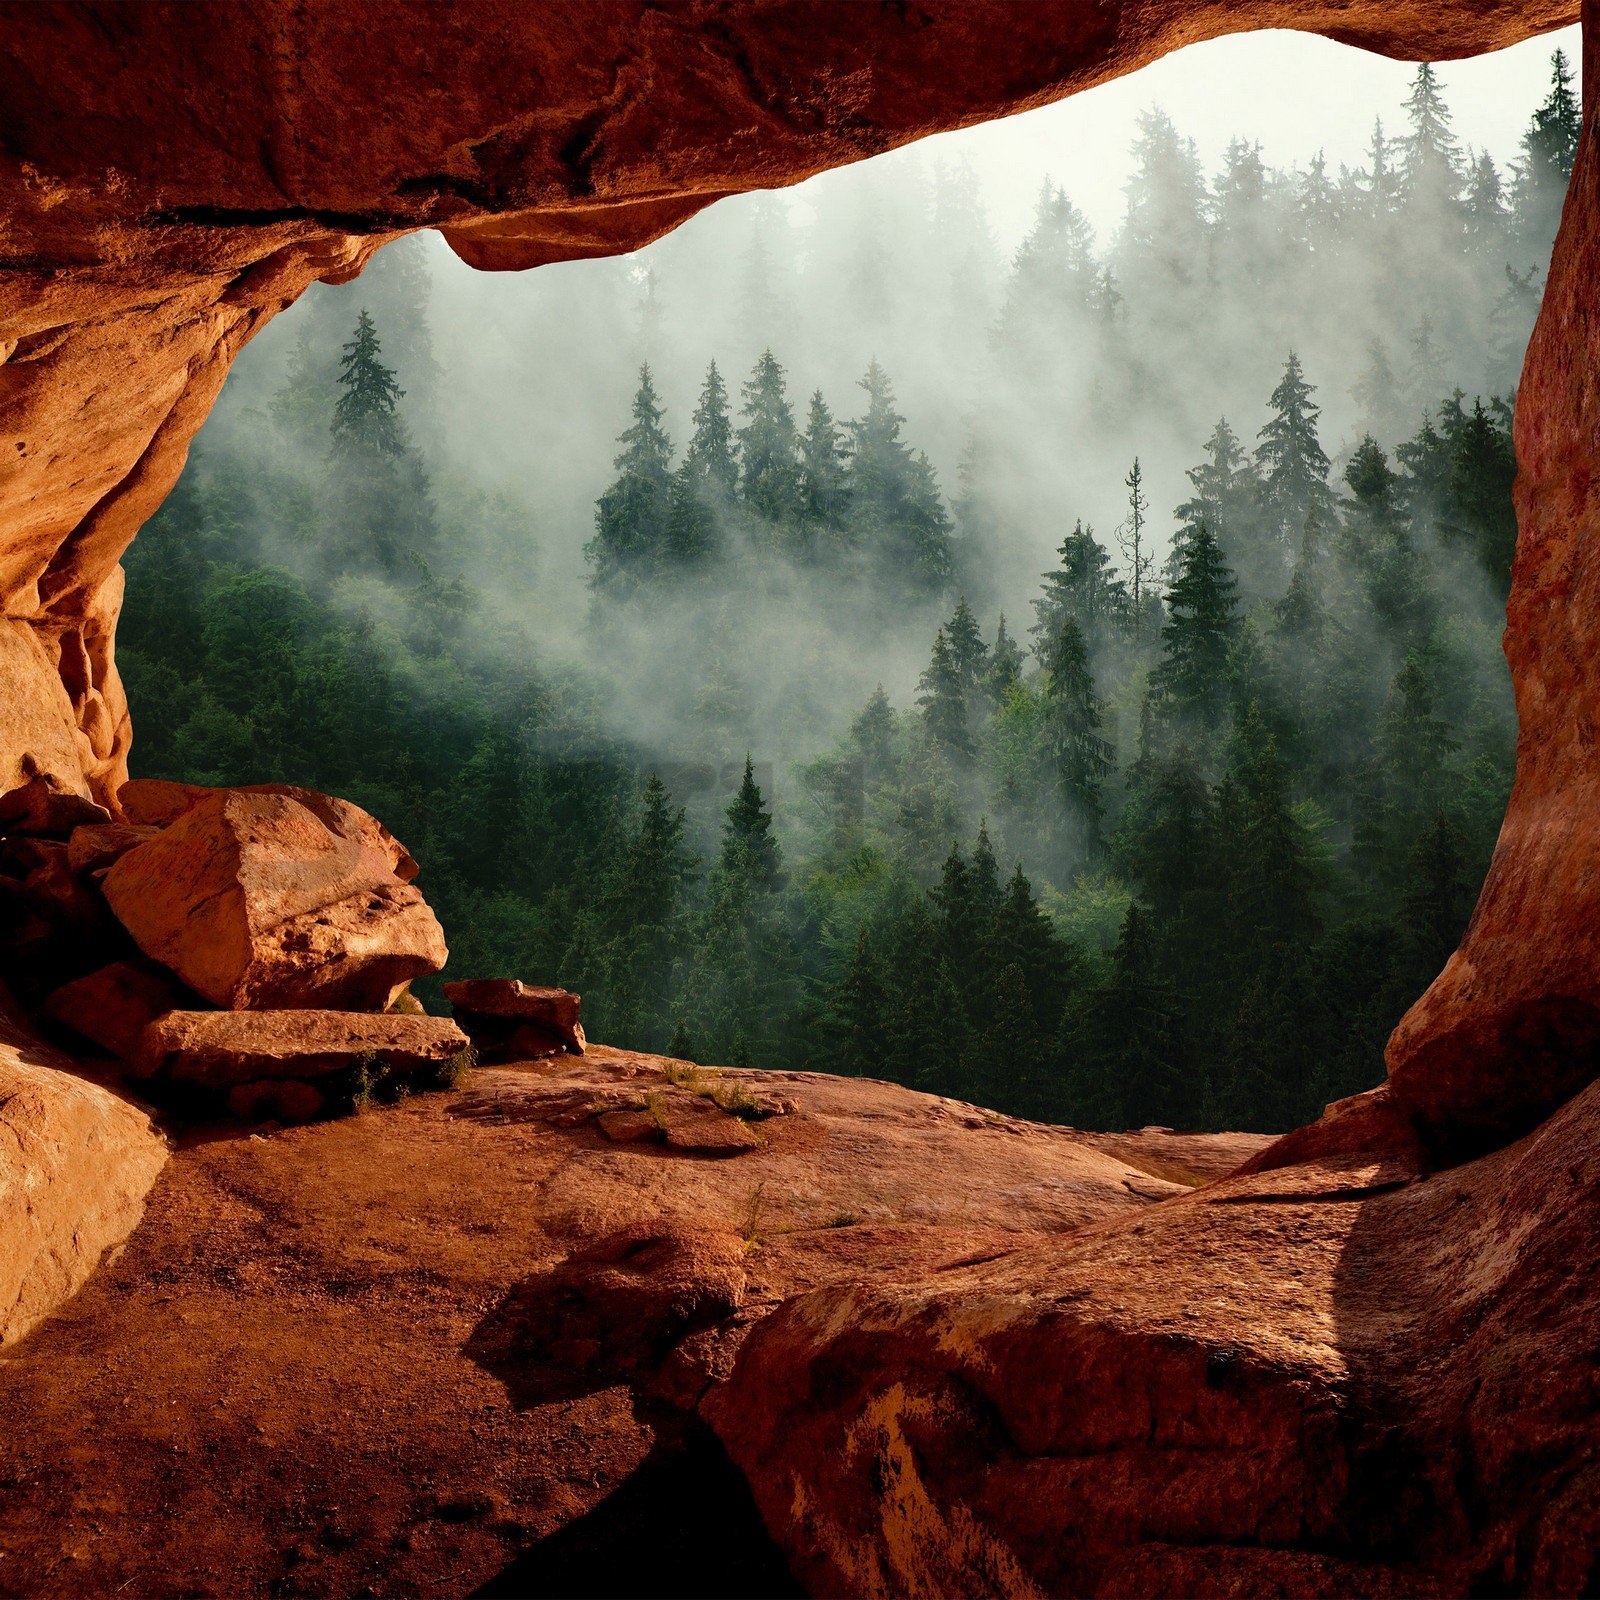 Vlies fotótapéta: Egy barlang az erdő mellett - 368x254 cm